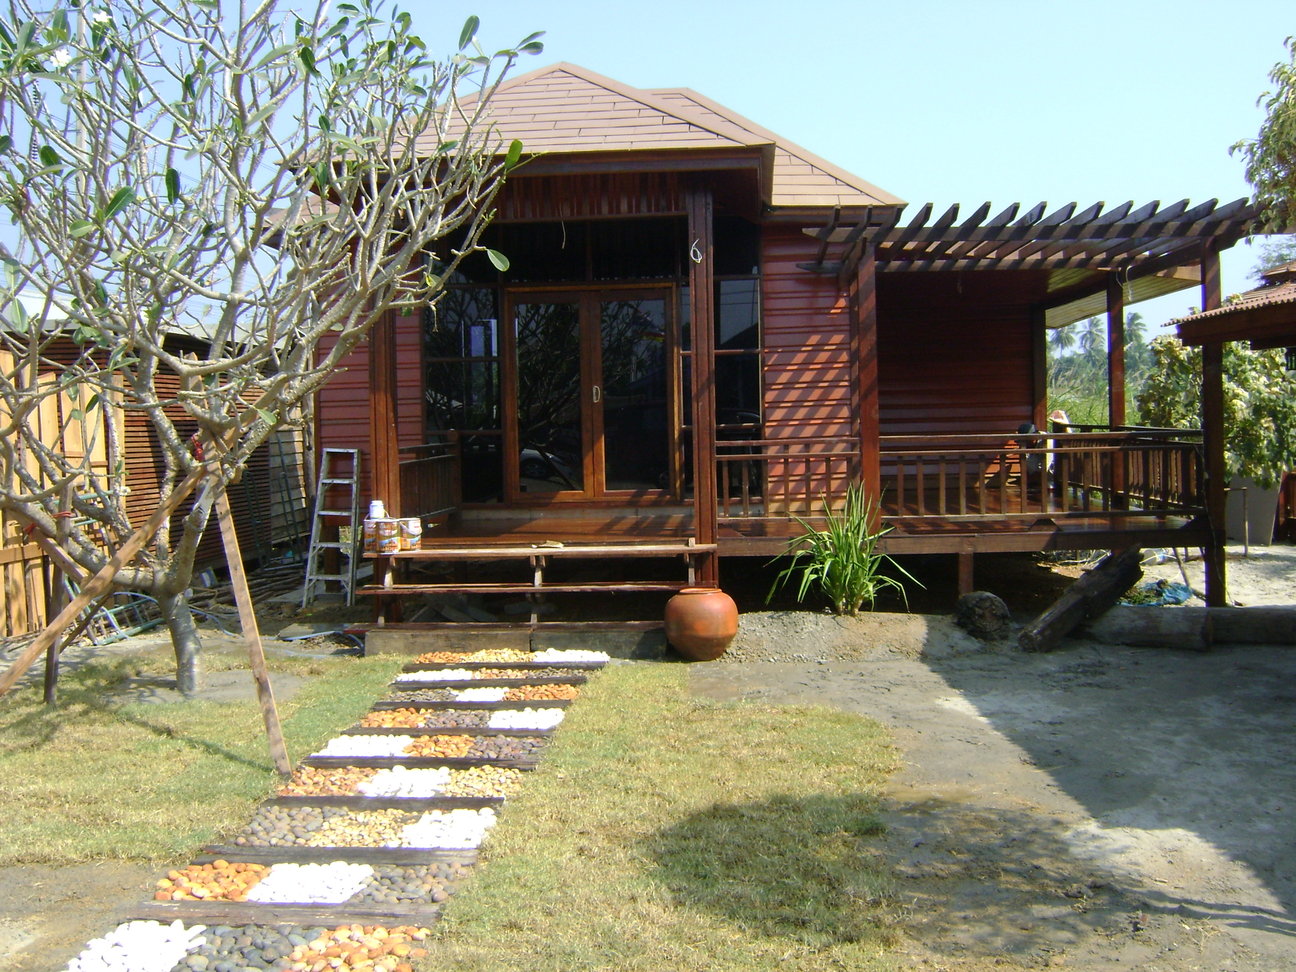 ขายบ้านไม้รีสอร์ท ซุ้มนั่งเล่น ศาลา บ้านทรงไทย บ้านไม้ทุกรูปแบบ รูปที่ 1